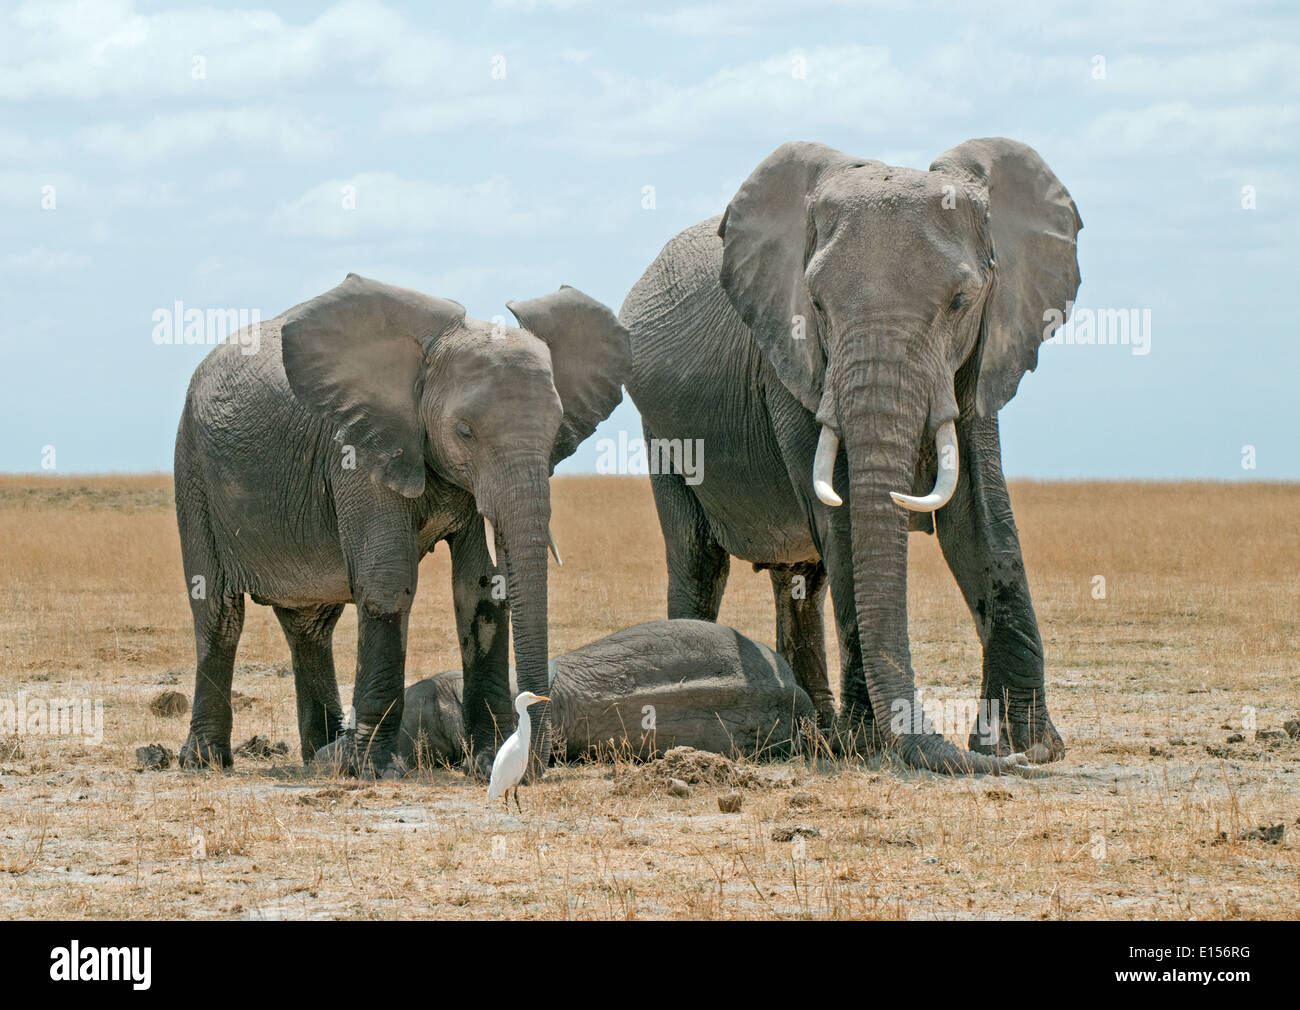 Et les jeunes femmes adultes bébé endormi garde d'éléphants dans le Parc national Amboseli au Kenya Banque D'Images